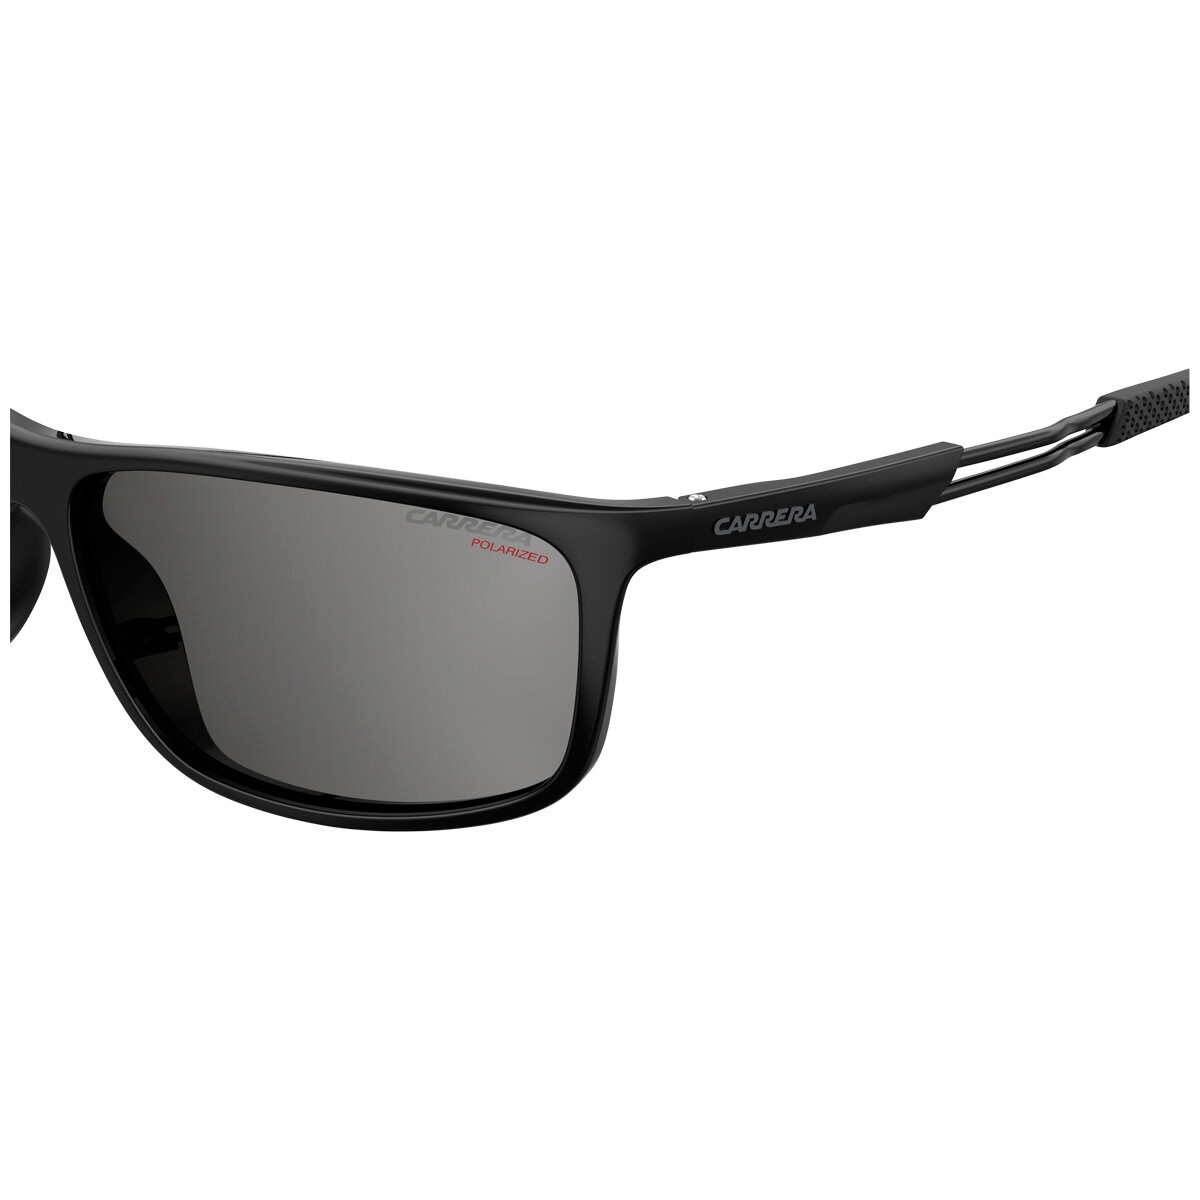 Carrera 4013SBL Men’s Sunglasses